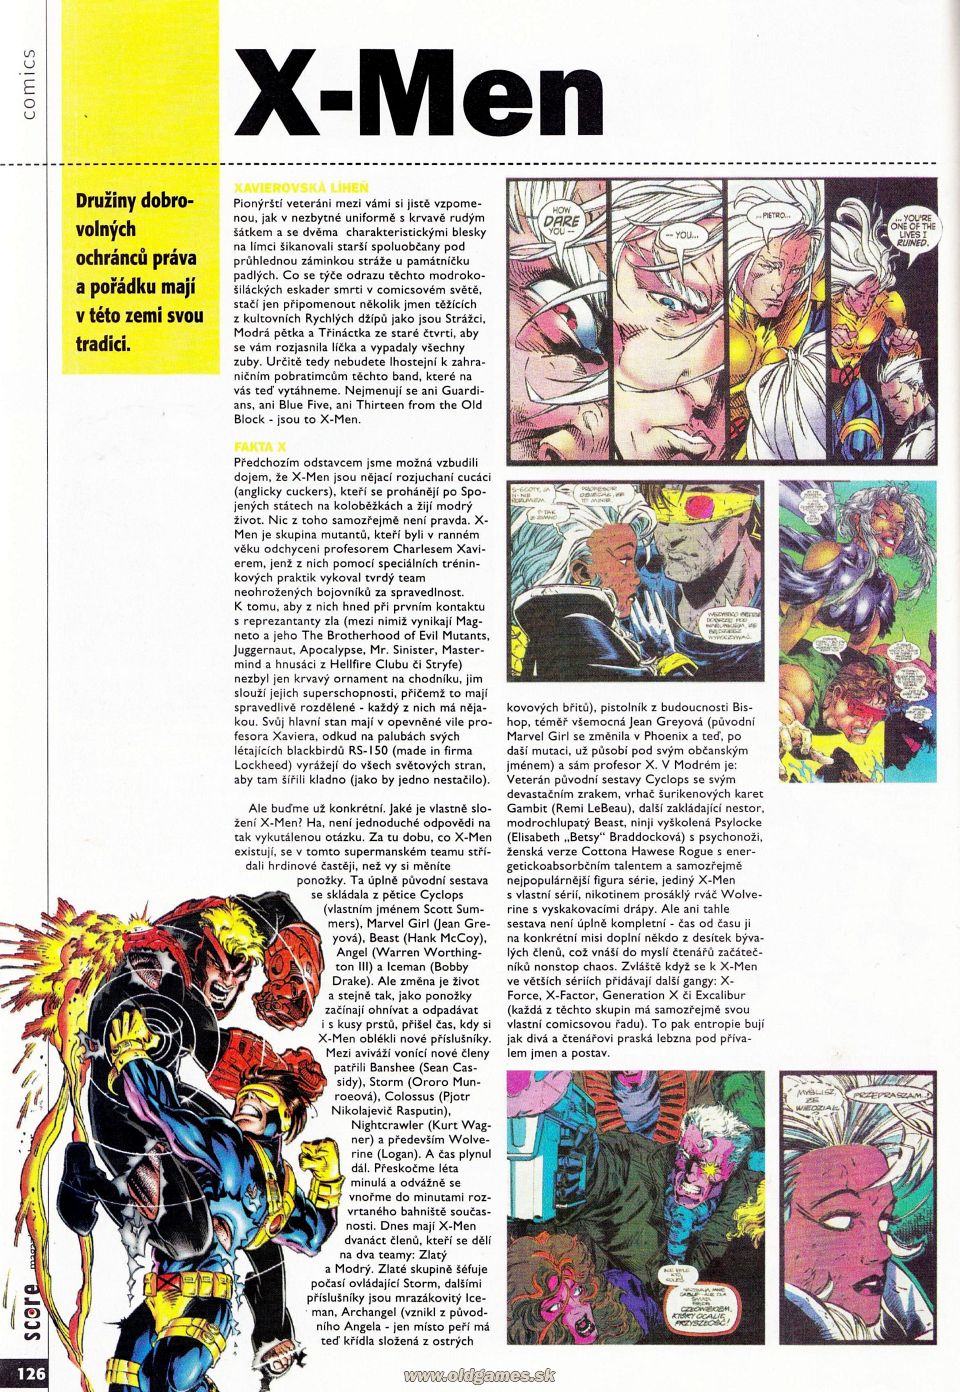 Comics: X-Men